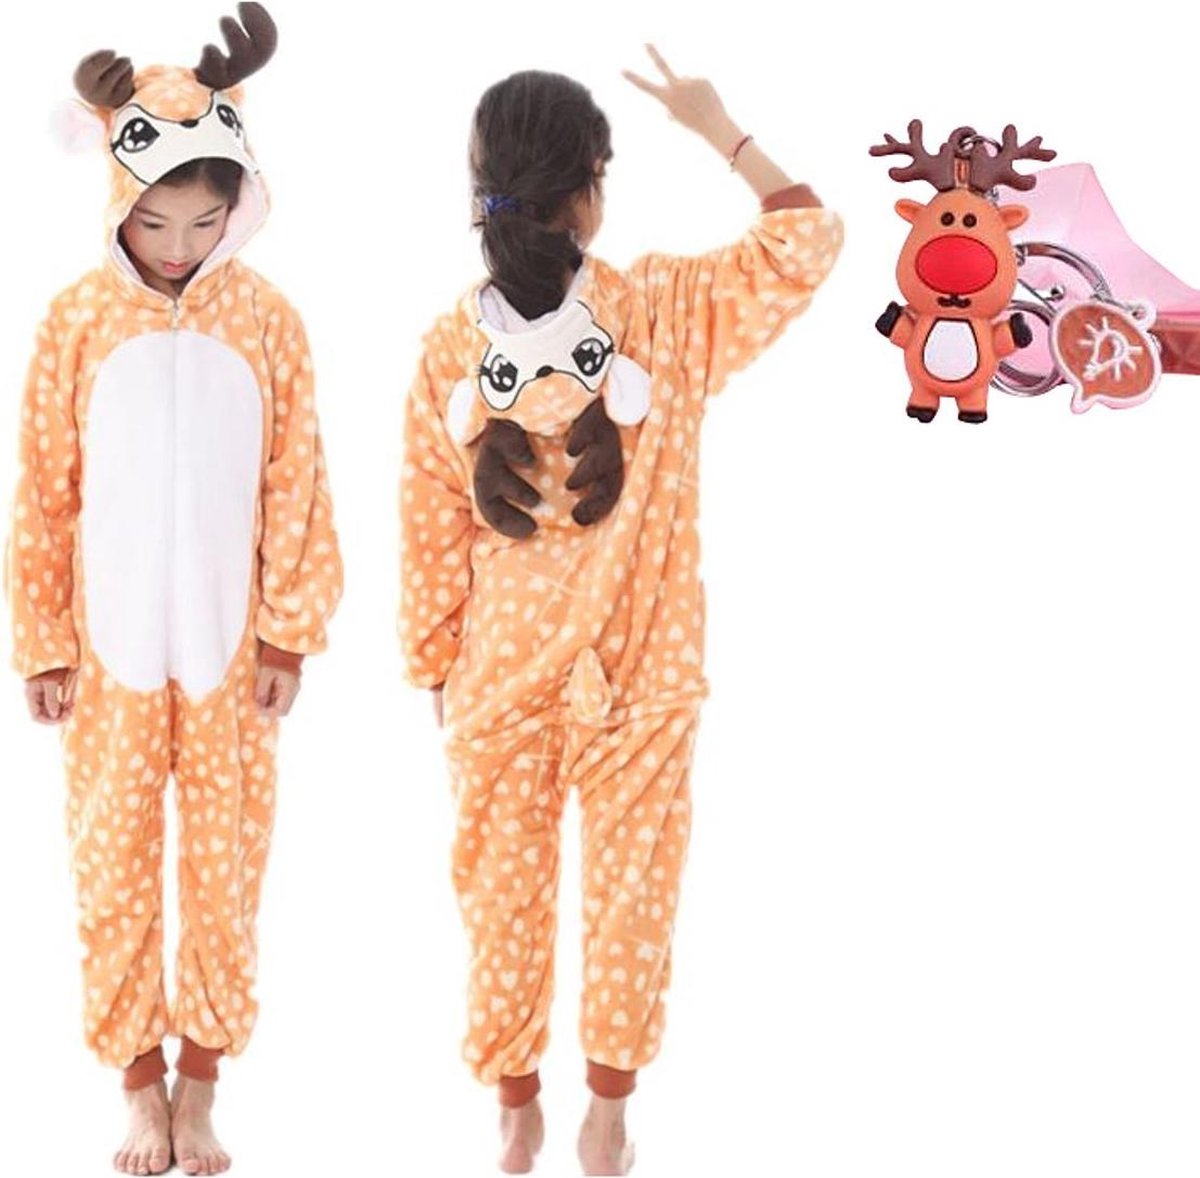 Onesie rendier- hert - eland dieren kostuum jumpsuit pyjama kinderen - 104-110 (110) + GRATIS tas/sleutelhanger verkleedkleding